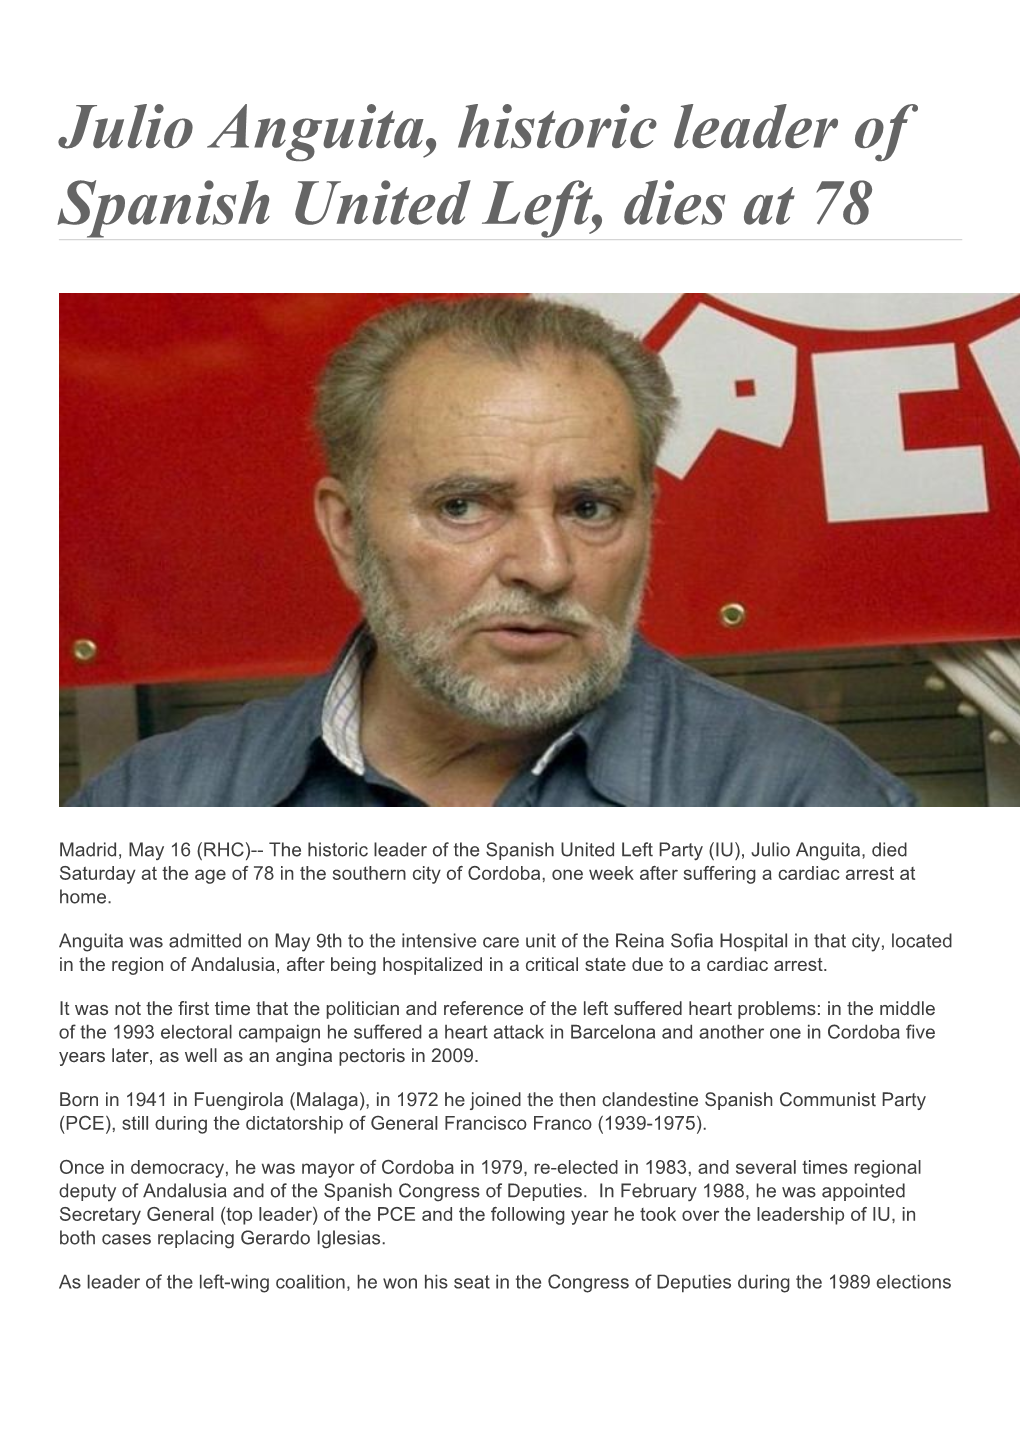 Julio Anguita, Historic Leader of Spanish United Left, Dies at 78